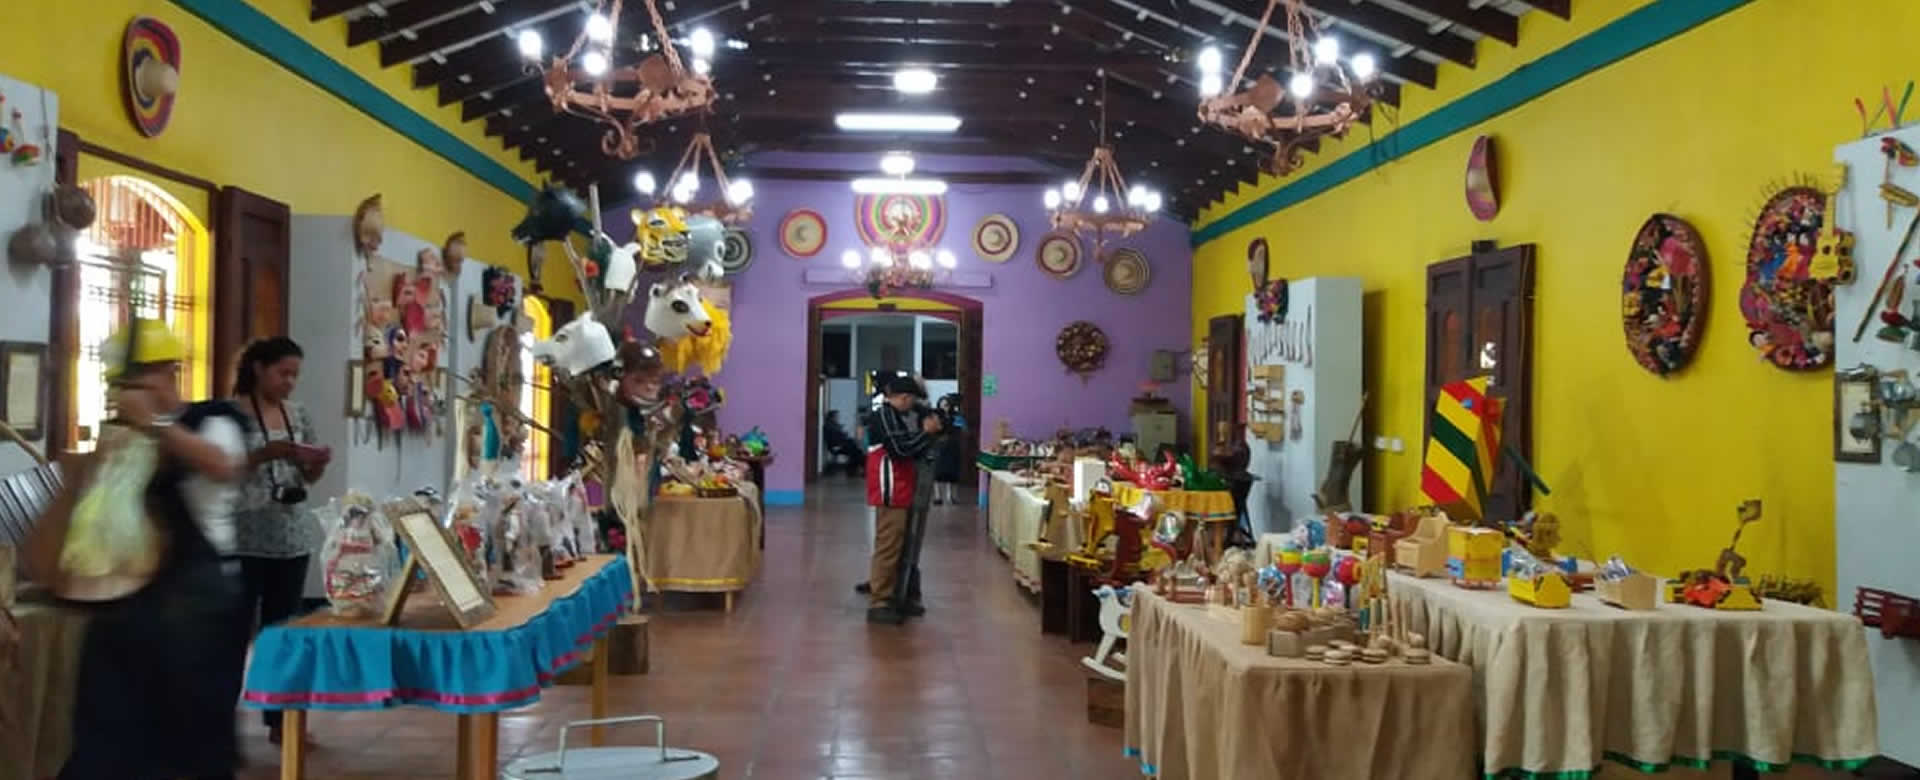 Emblemática Casa de las Artesanías en Masaya abre sus puertas